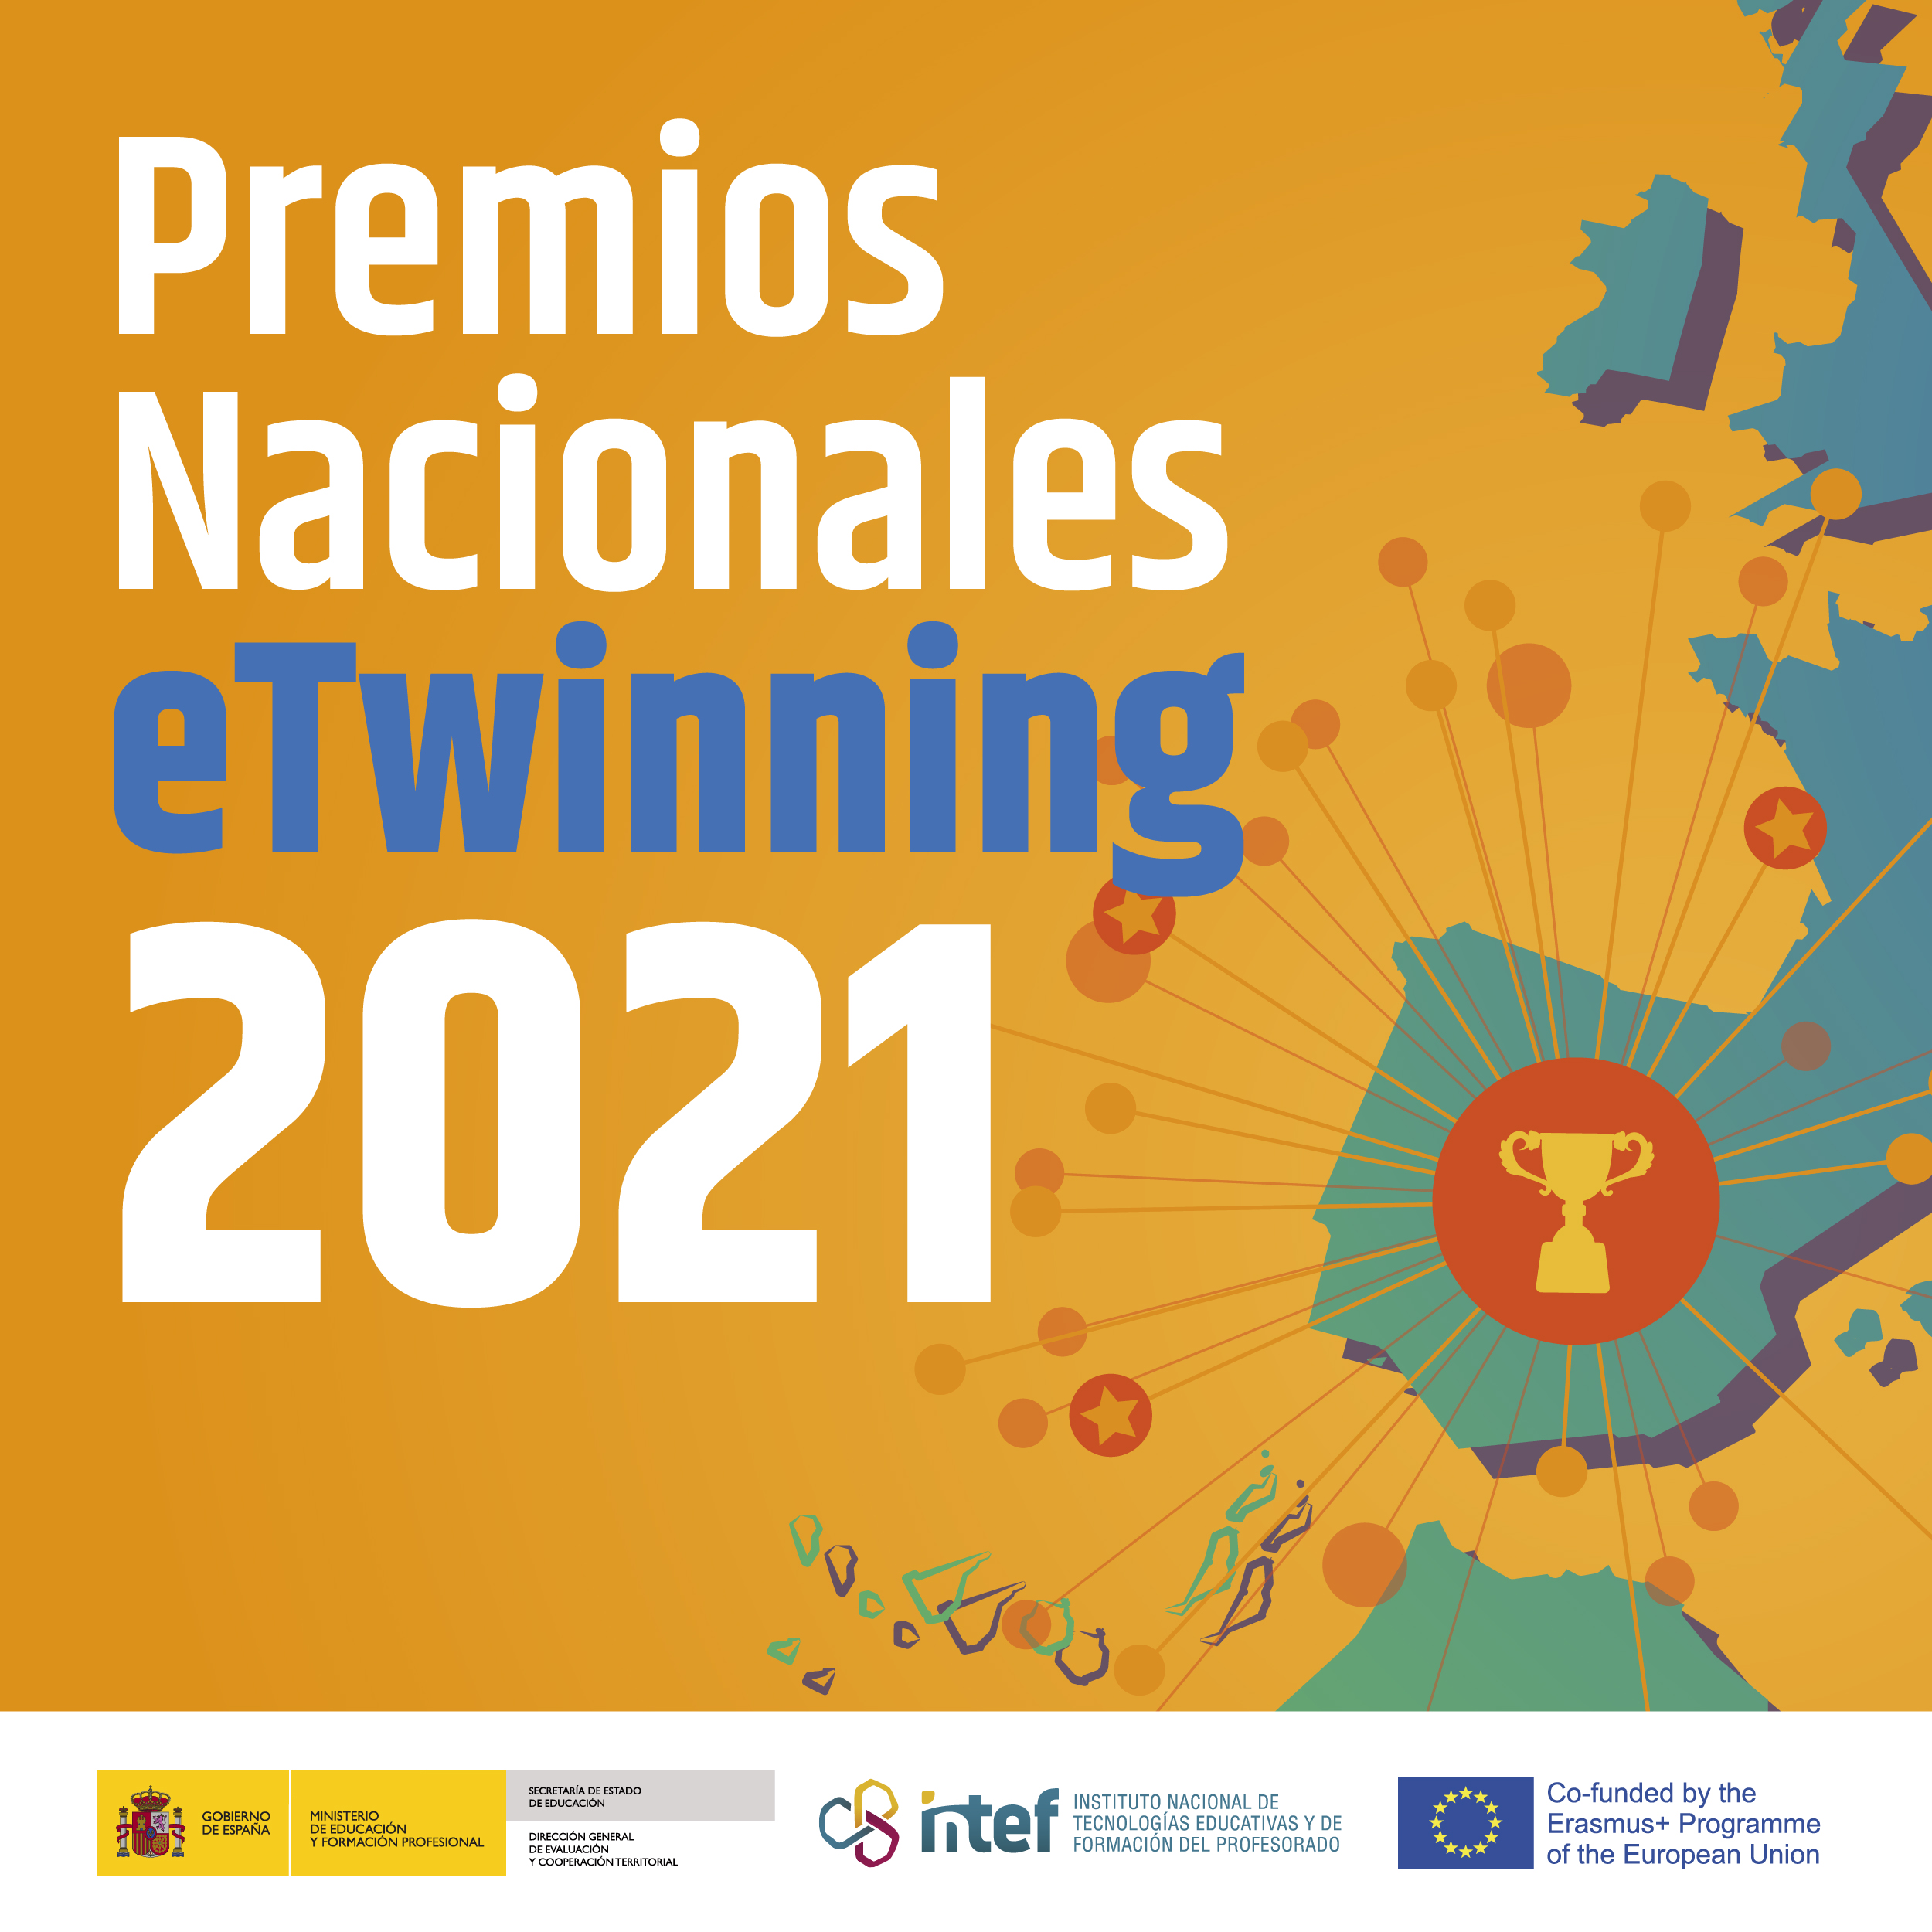 Premios Nacionales eTwinning 2021: Listado de proyectos y docentes galardonados